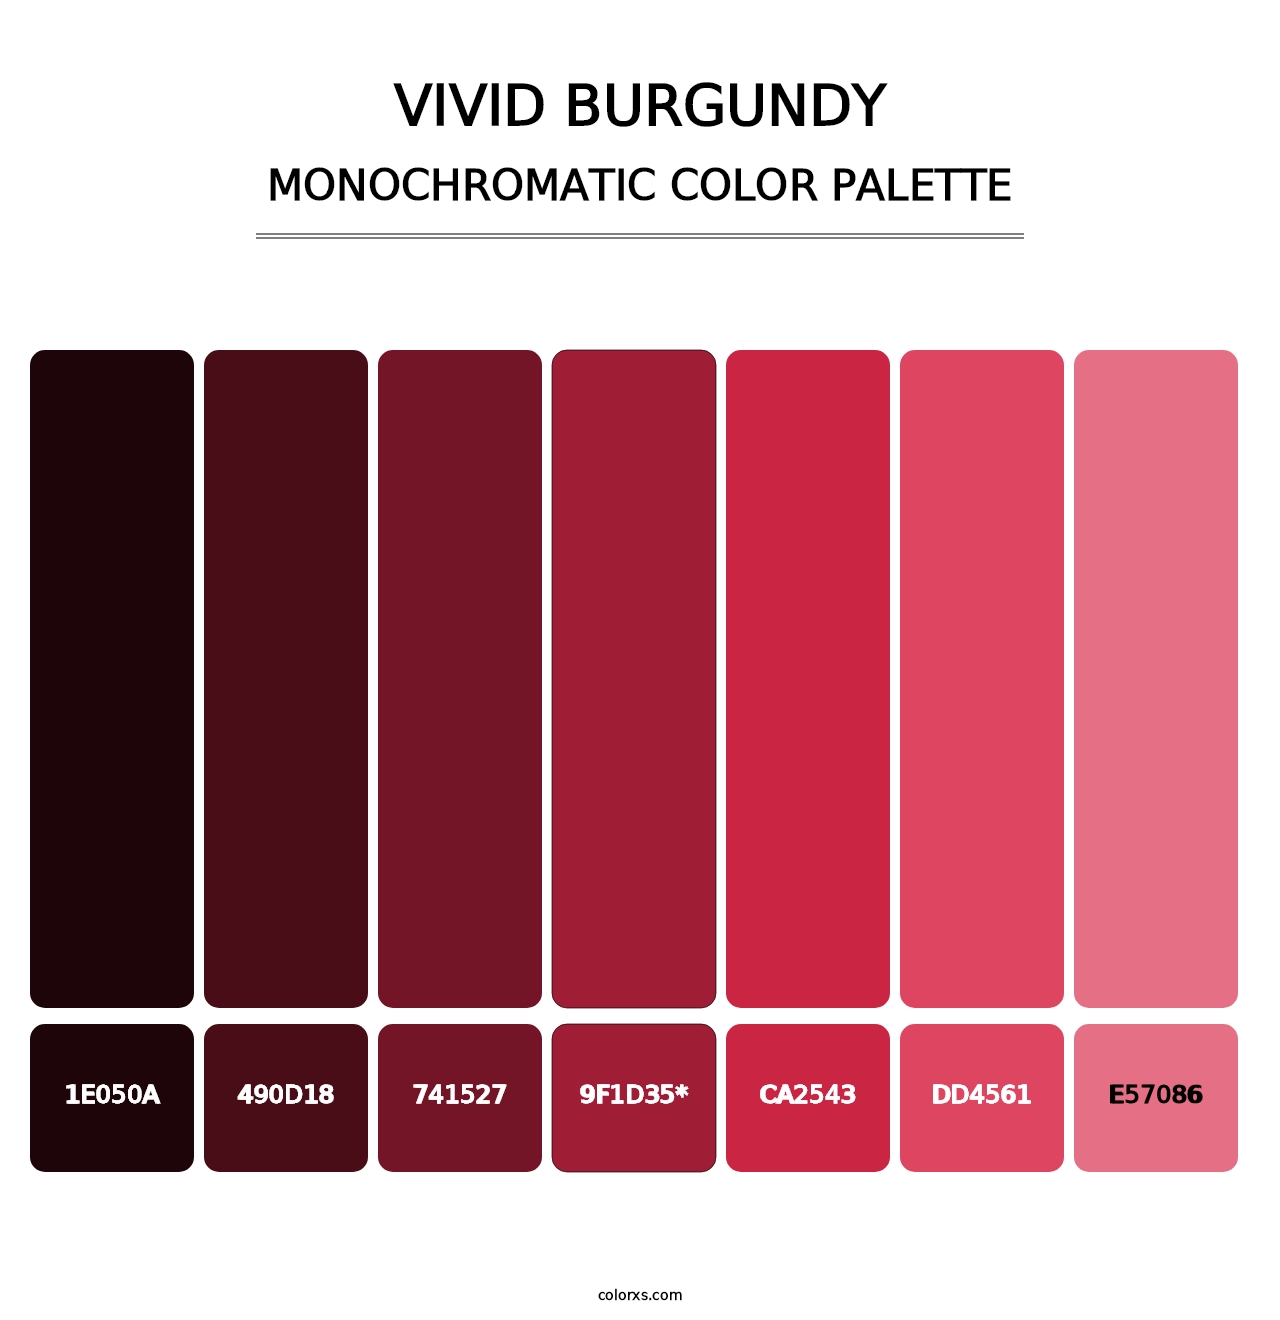 Vivid Burgundy - Monochromatic Color Palette